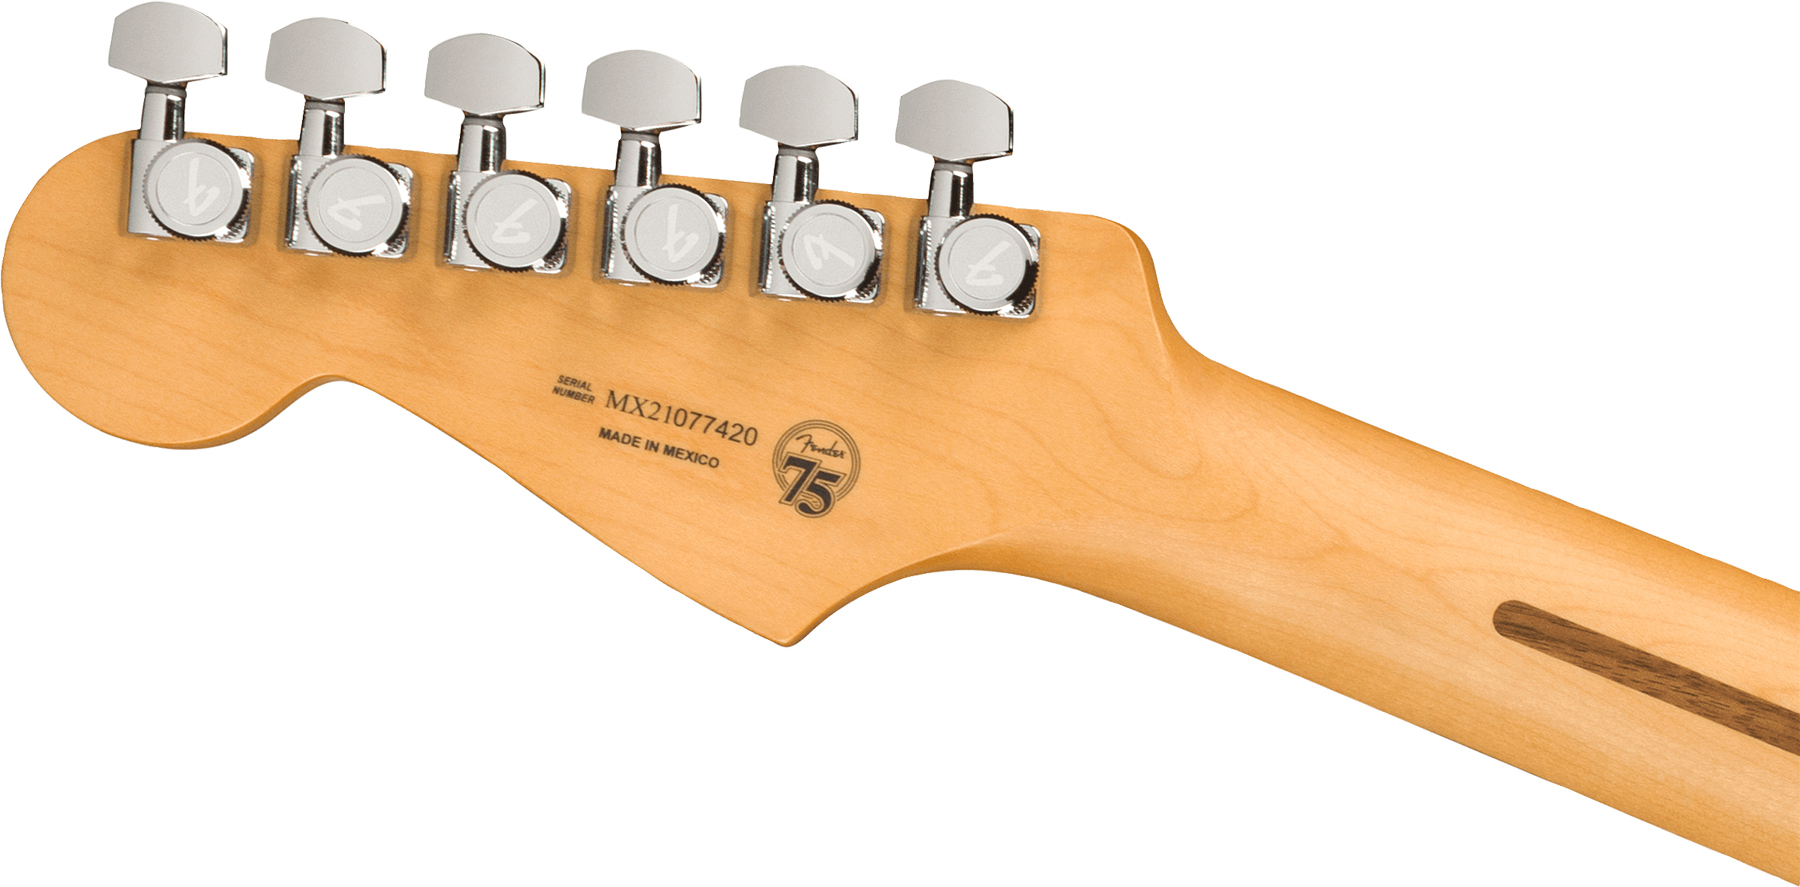 Fender Strat Player Plus Mex Hss Trem Pf - Silverburst - Elektrische gitaar in Str-vorm - Variation 3